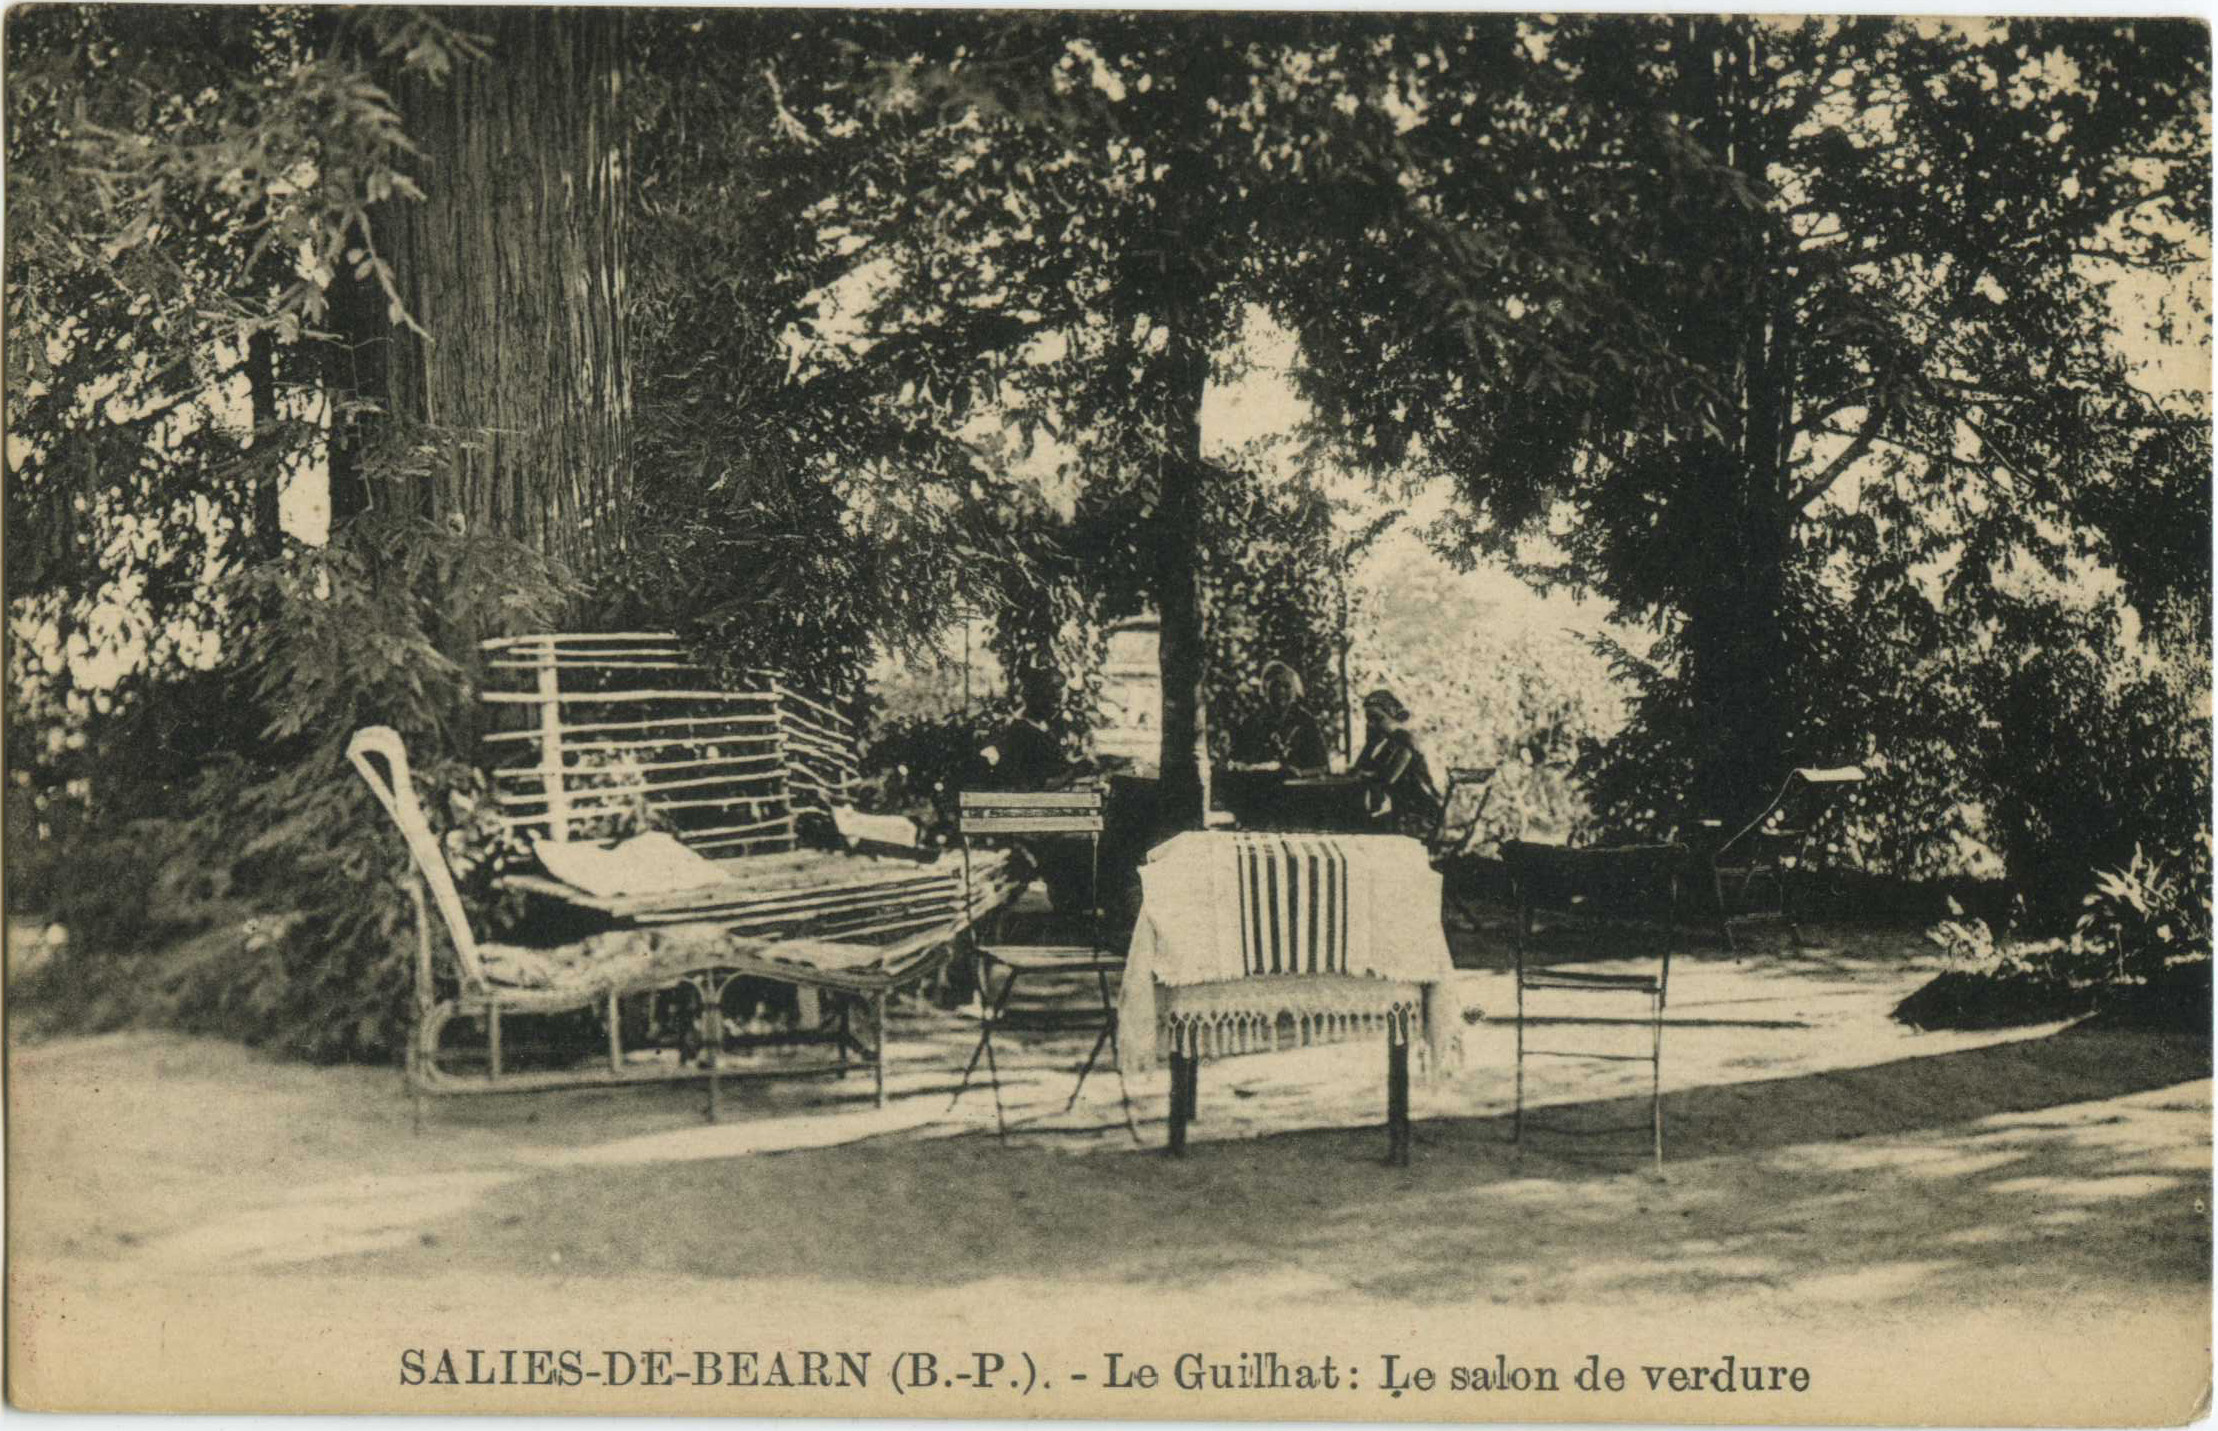 Salies-de-Béarn - Le Guilhat: Le salon de verdure